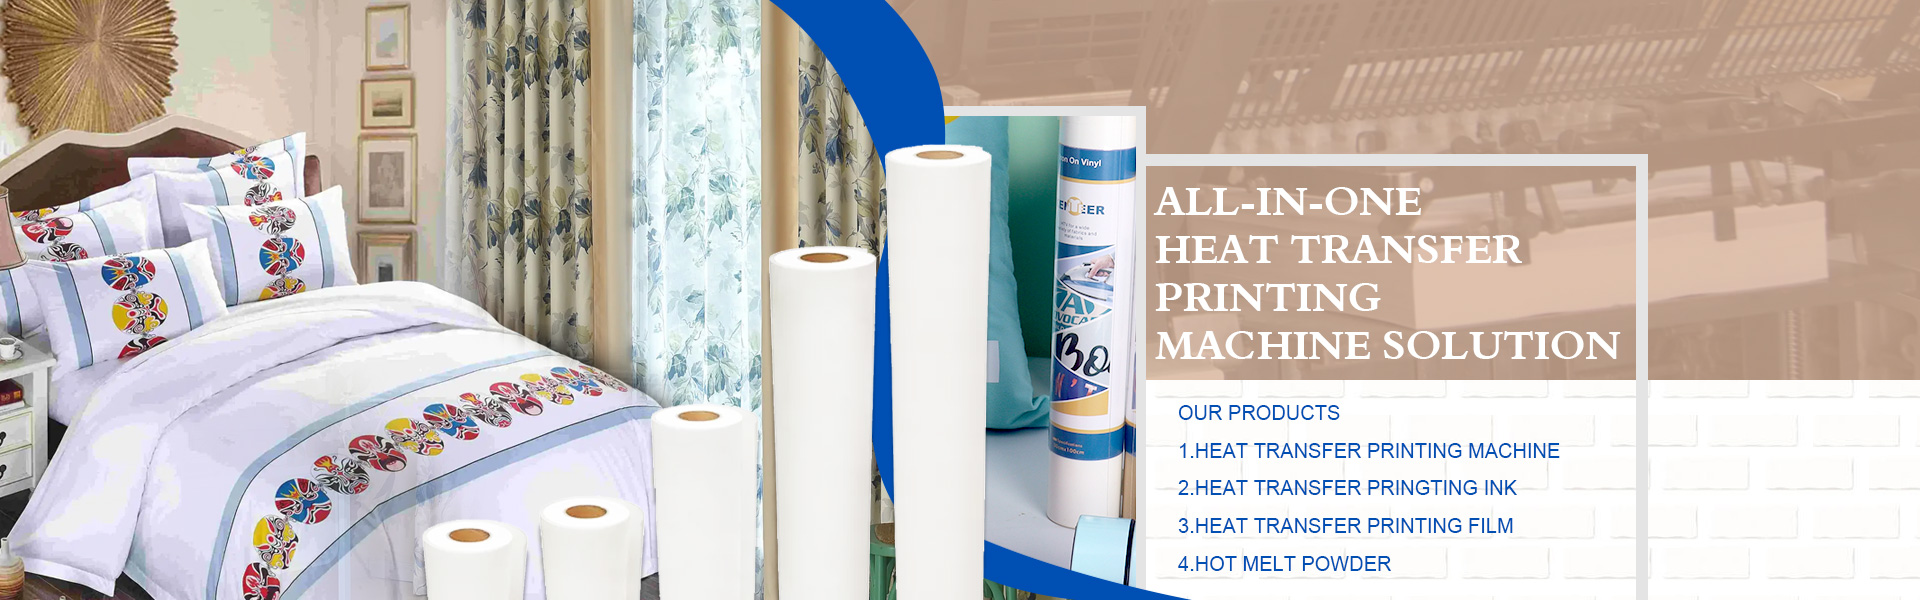 Хартия за пренос на топлина, хартия за сублимация, хартия за цифрови принтери,Suzhou Huarong Paper Products Co., Ltd